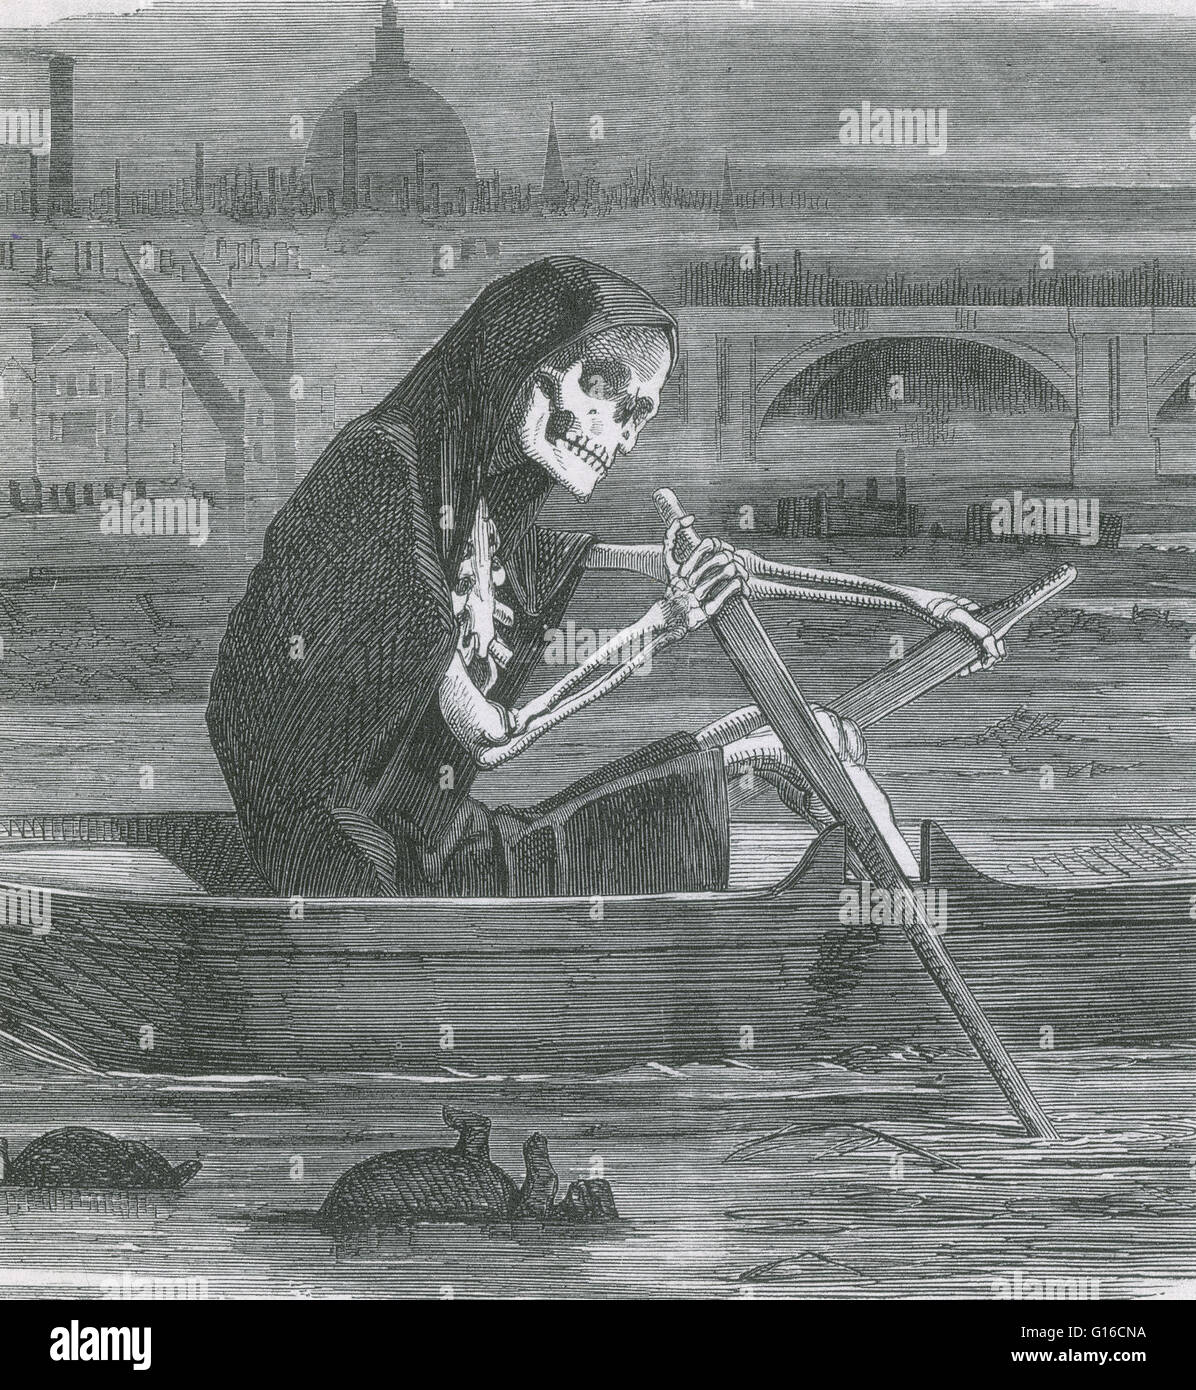 Punch-Karikatur von 1858, während die großen stinken in London, Darstellung der Themse als den Fluss Styx. Im Sommer 1858 verschüttet alle Abwasser- und Abfallwirtschaft einer Bevölkerung Nummerierung rund 2 Millionen Menschen in den Fluss direkt aus der Stadt Kanalisation oder fr Stockfoto